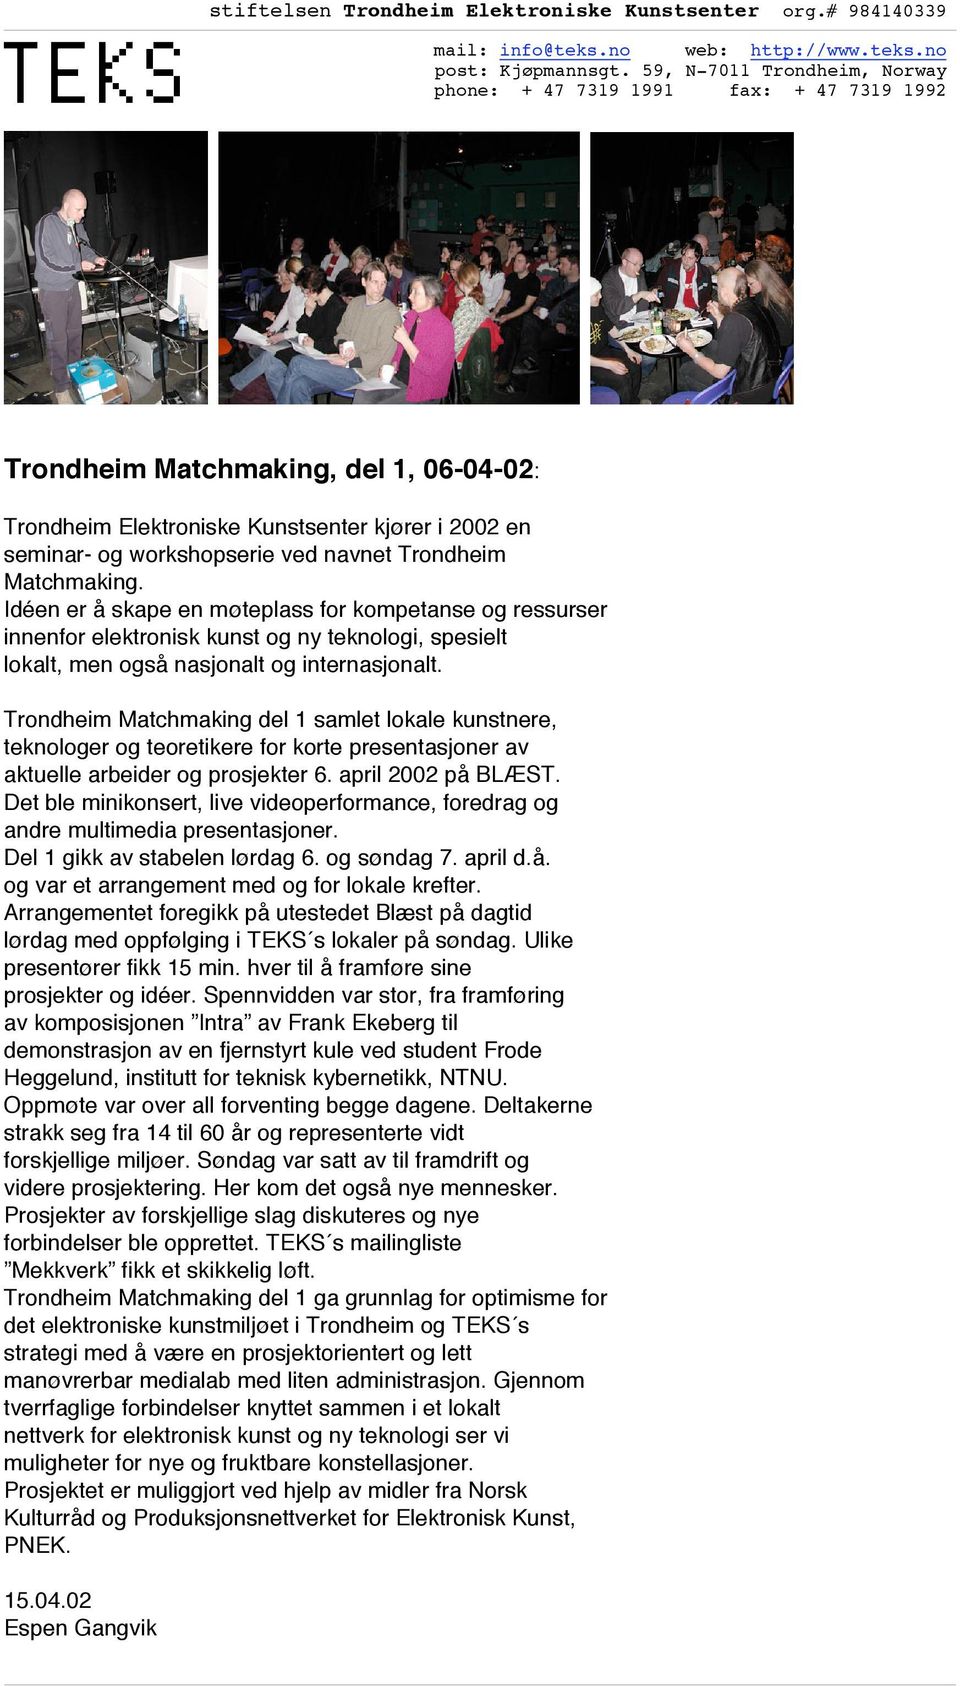 Trondheim Matchmaking del 1 samlet lokale kunstnere, teknologer og teoretikere for korte presentasjoner av aktuelle arbeider og prosjekter 6. april 2002 på BLÆST.